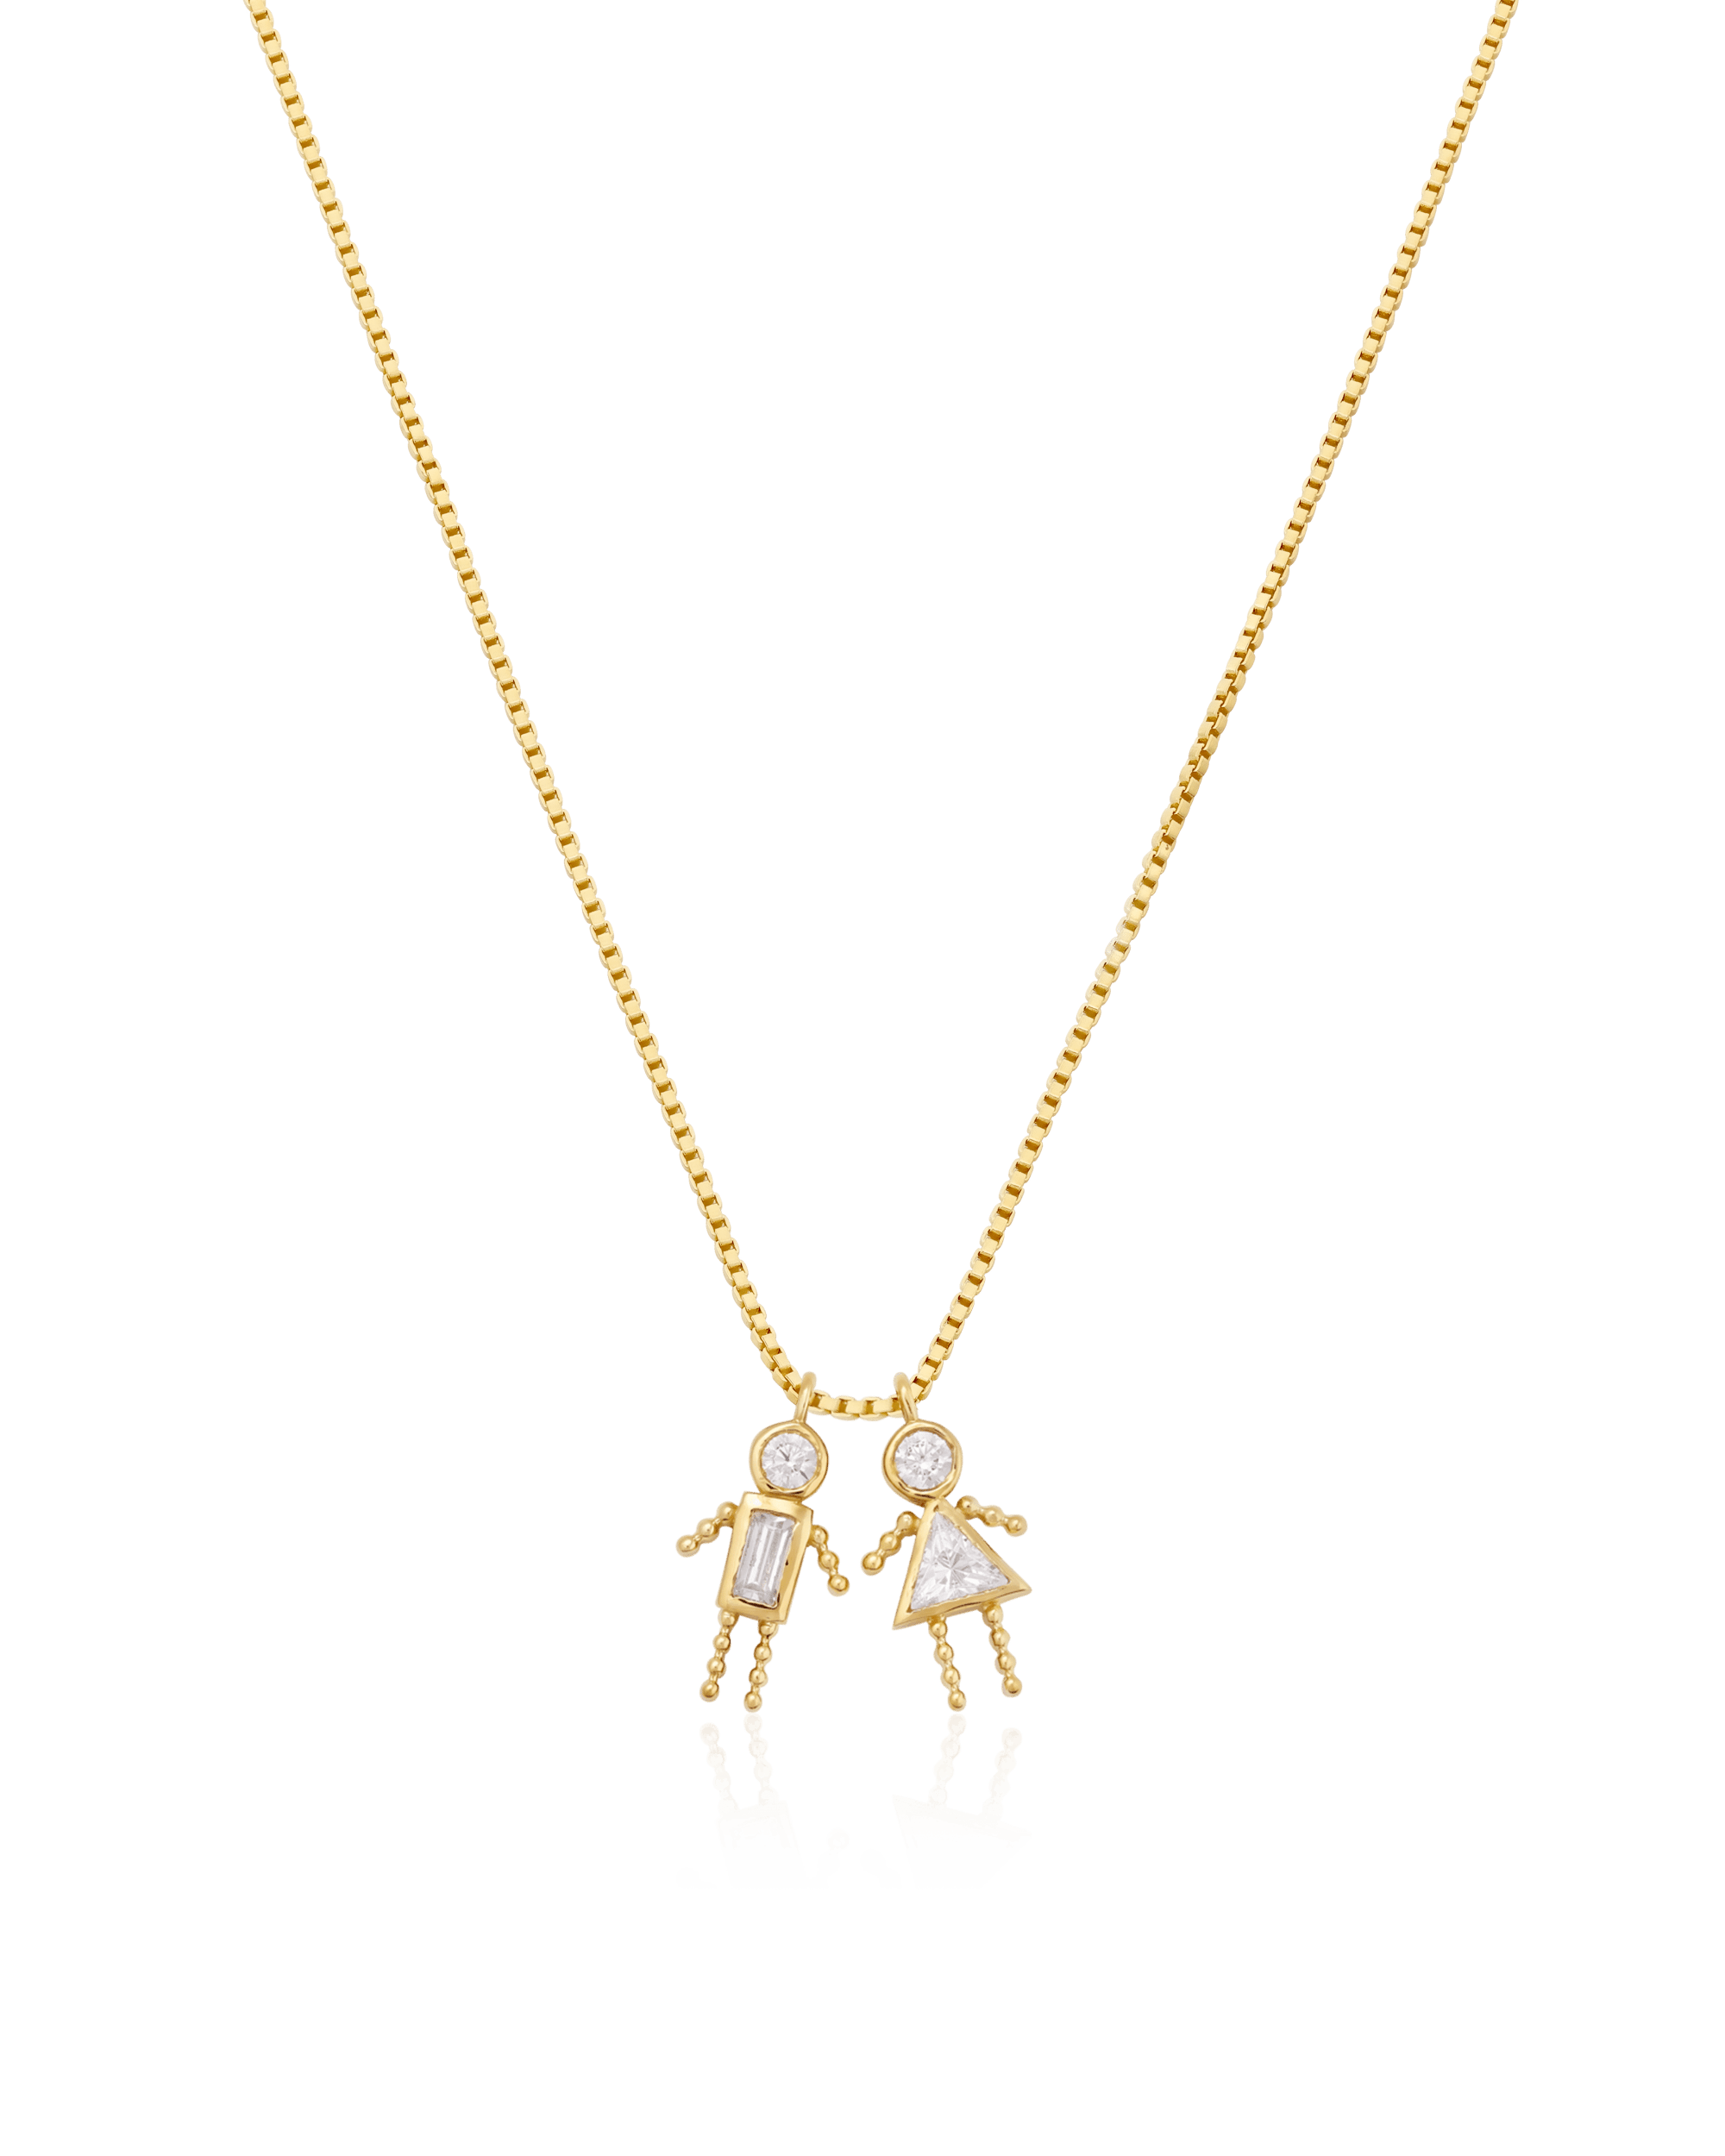 Mini Me Necklace - 18K Gold Vermeil Necklaces magal-dev 1 Small - 16" 